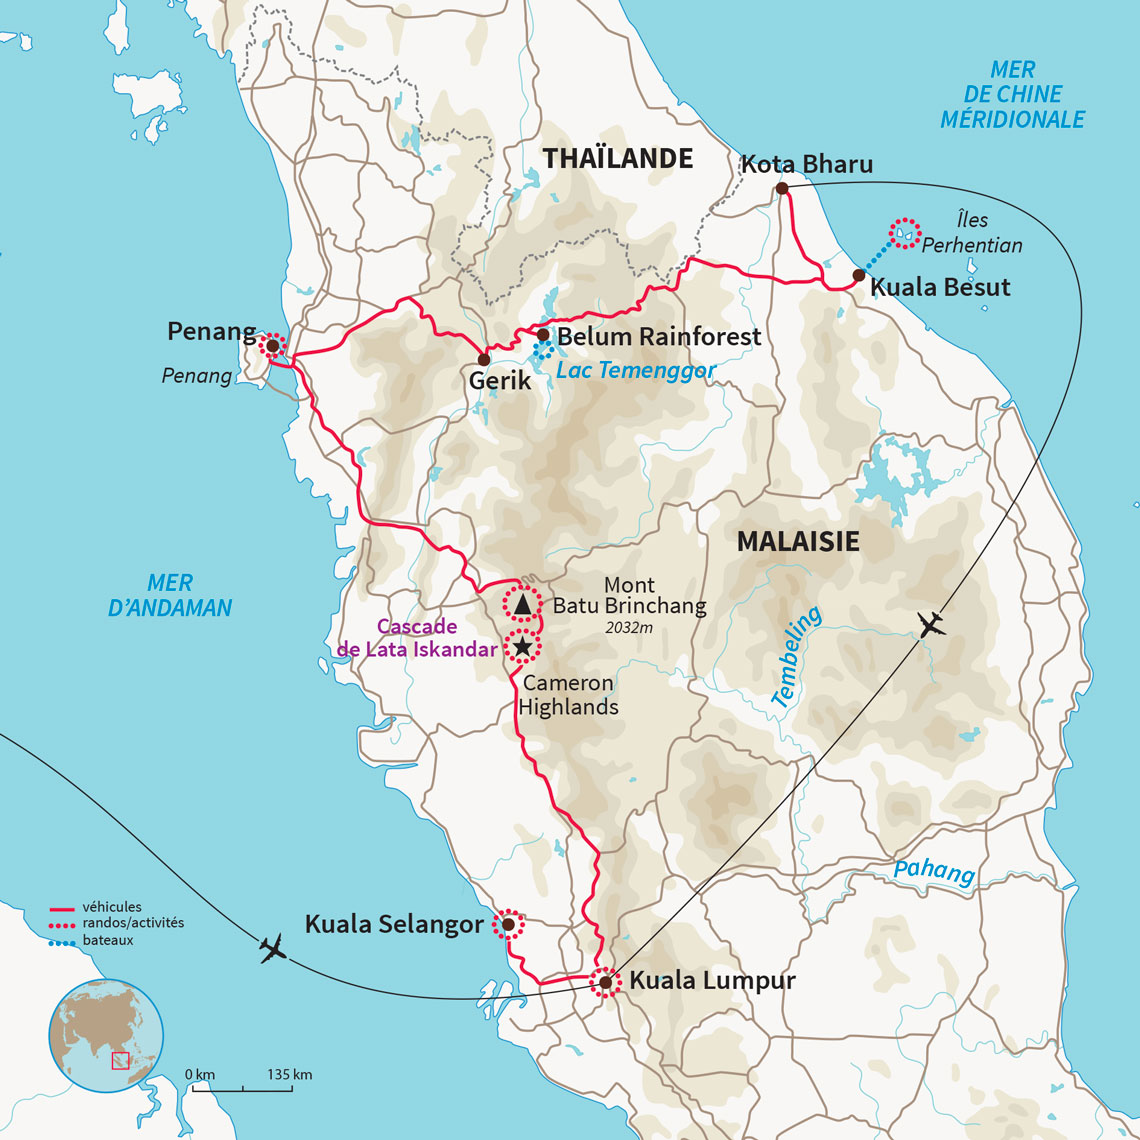 Carte Malaisie : Un Best of de la Malaisie & îles Perhentian 